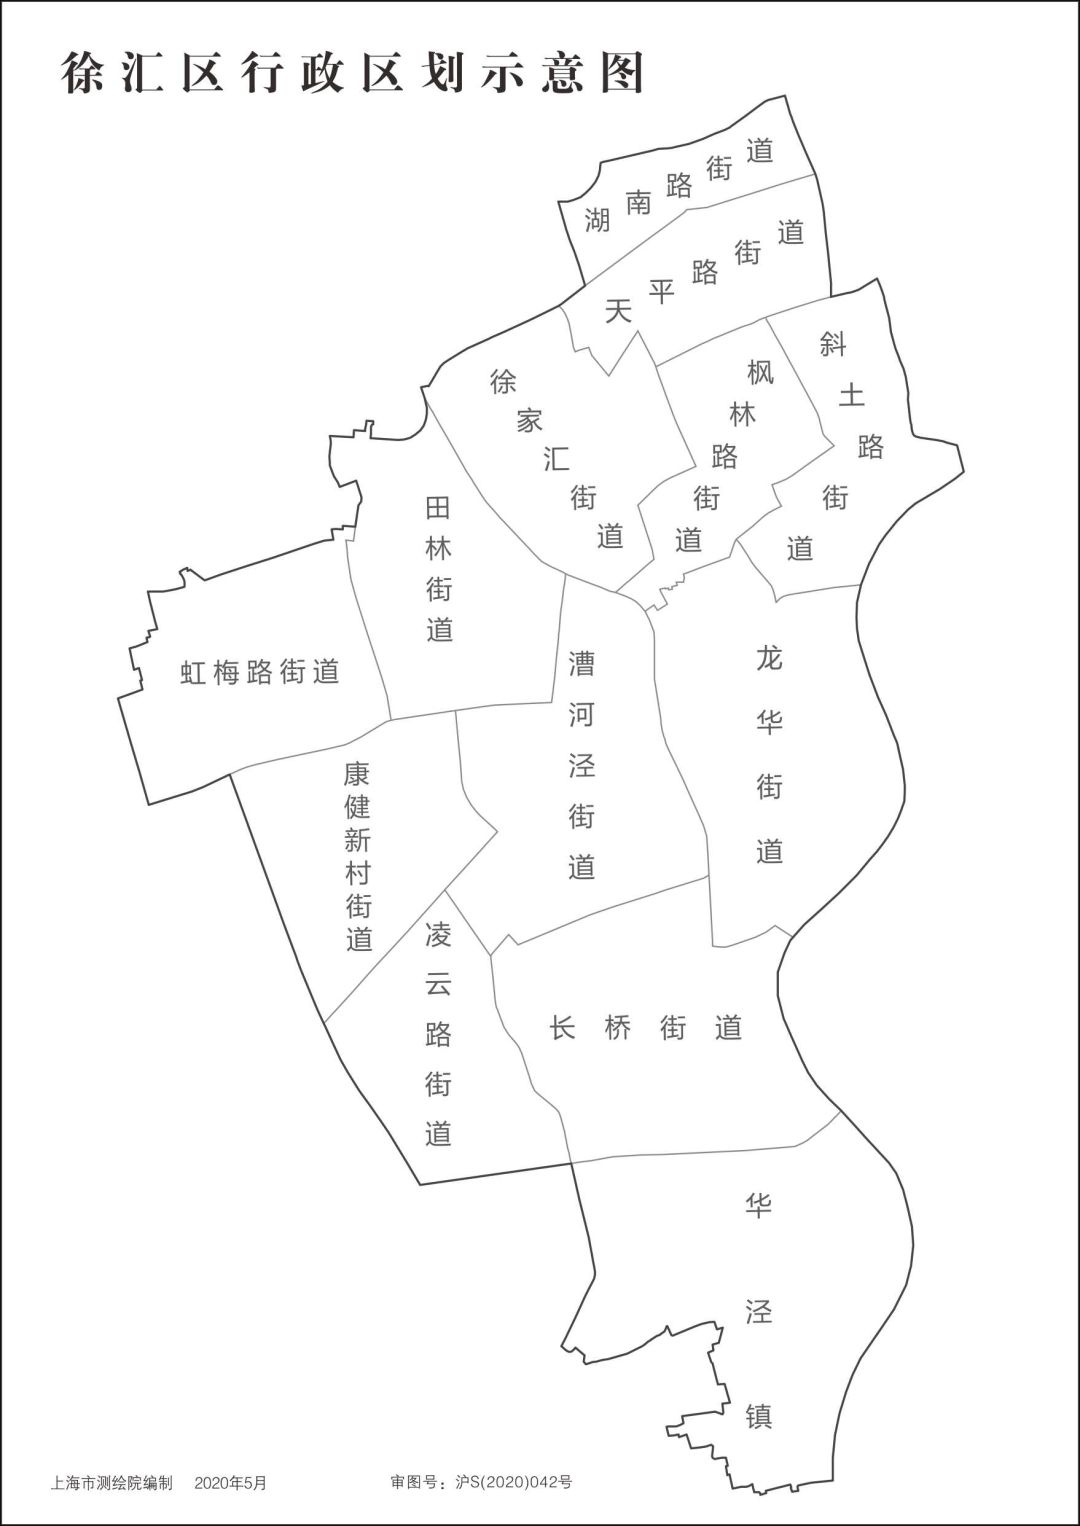 上海16区分街道地图(可放大观看)